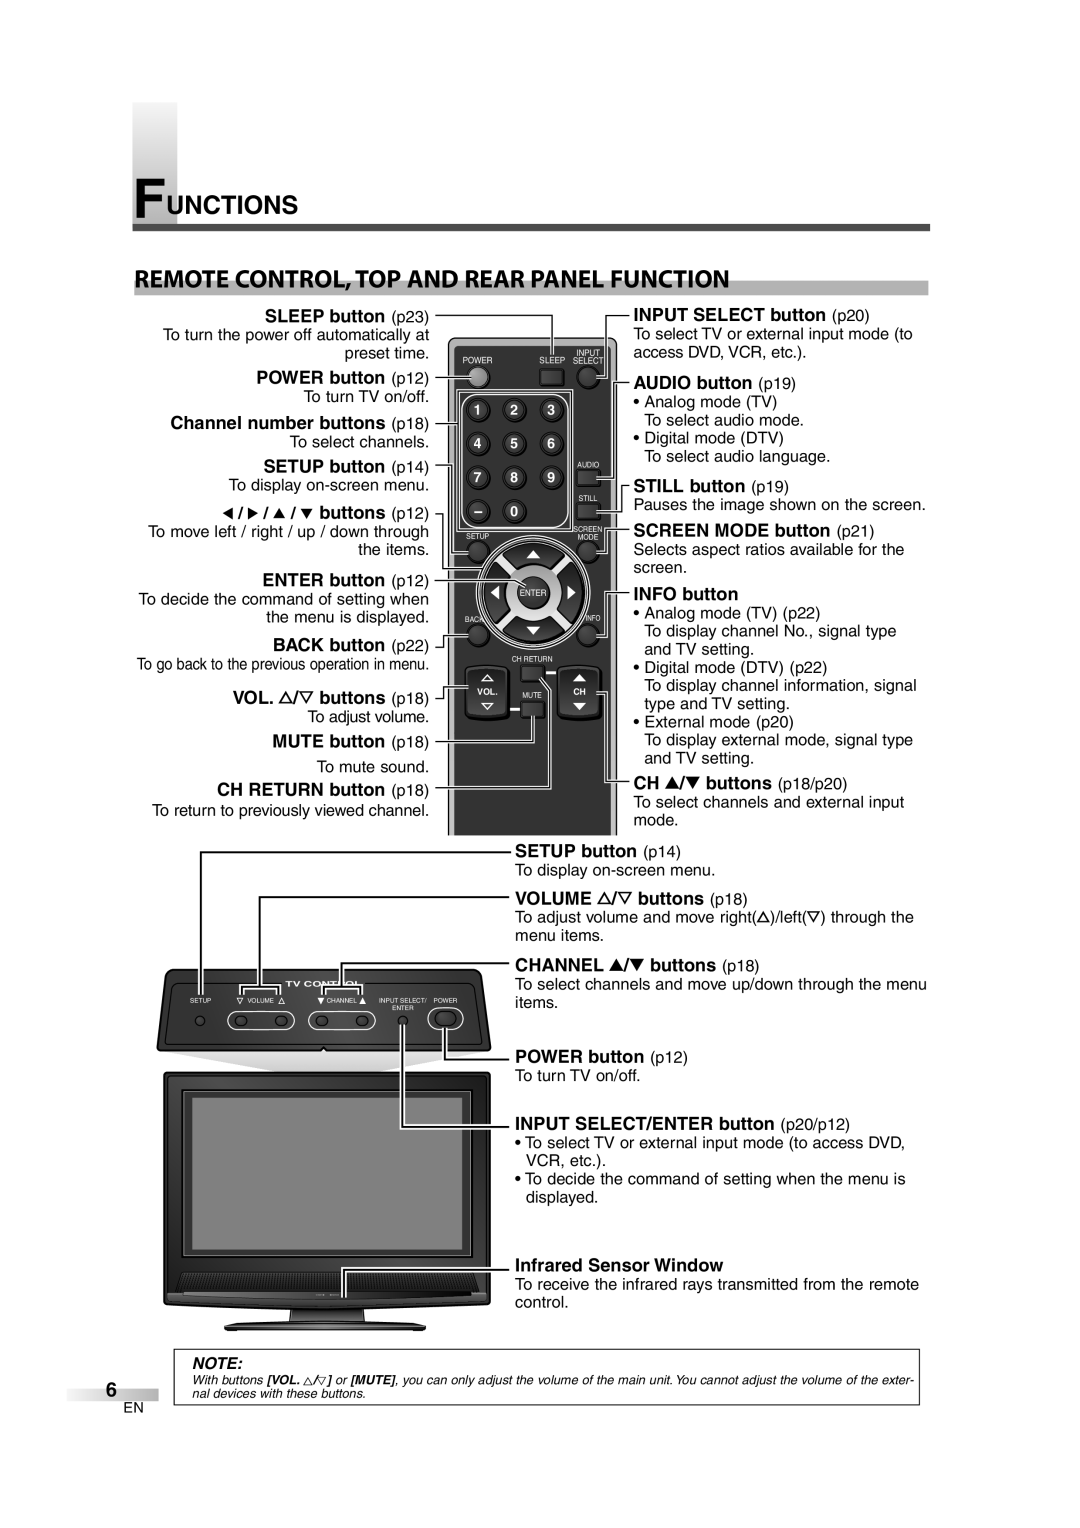 FUNAI CIWL3206 INPUT SELECT button p20, AUDIO button p19, STILL button p19, SCREEN MODE button p21, INFO button, items 